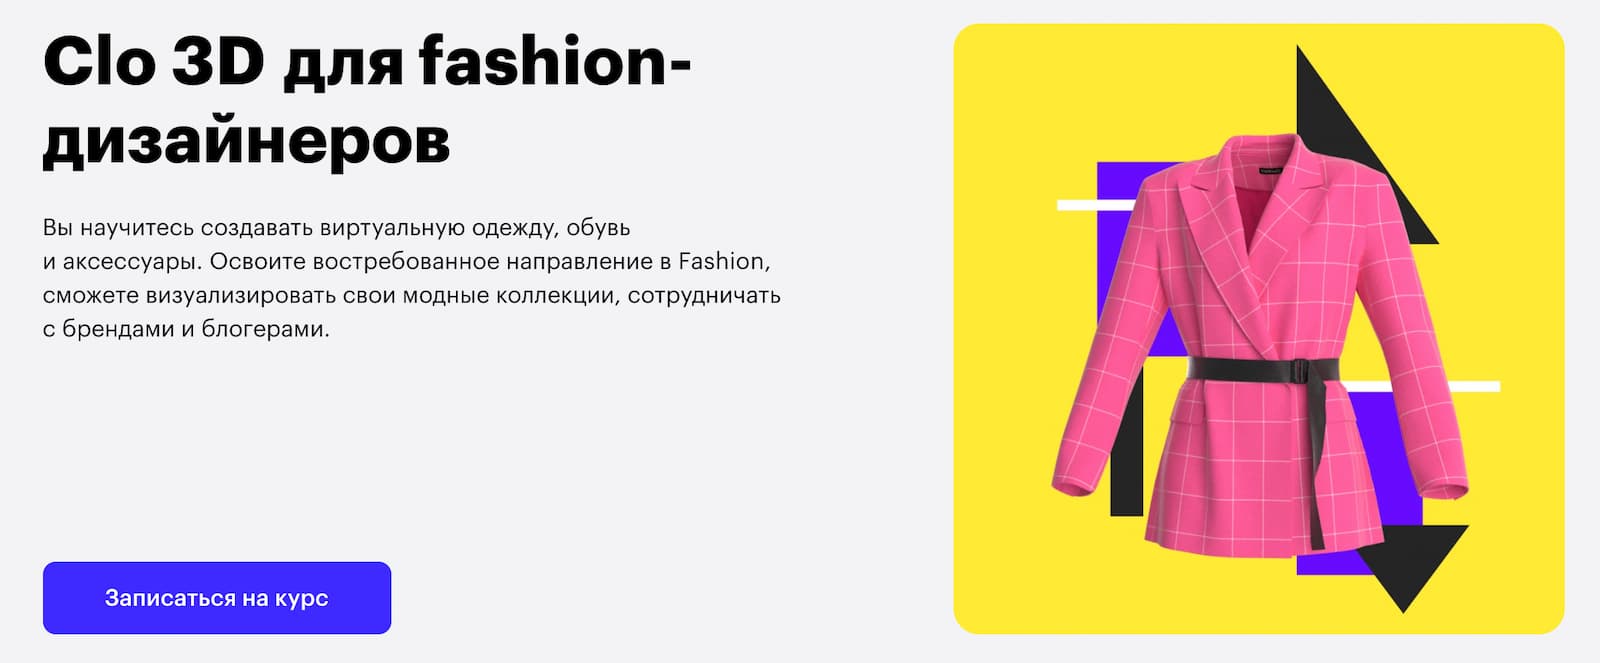 Записаться на курс «Clo 3D для fashion-дизайнеров» от Skillbox